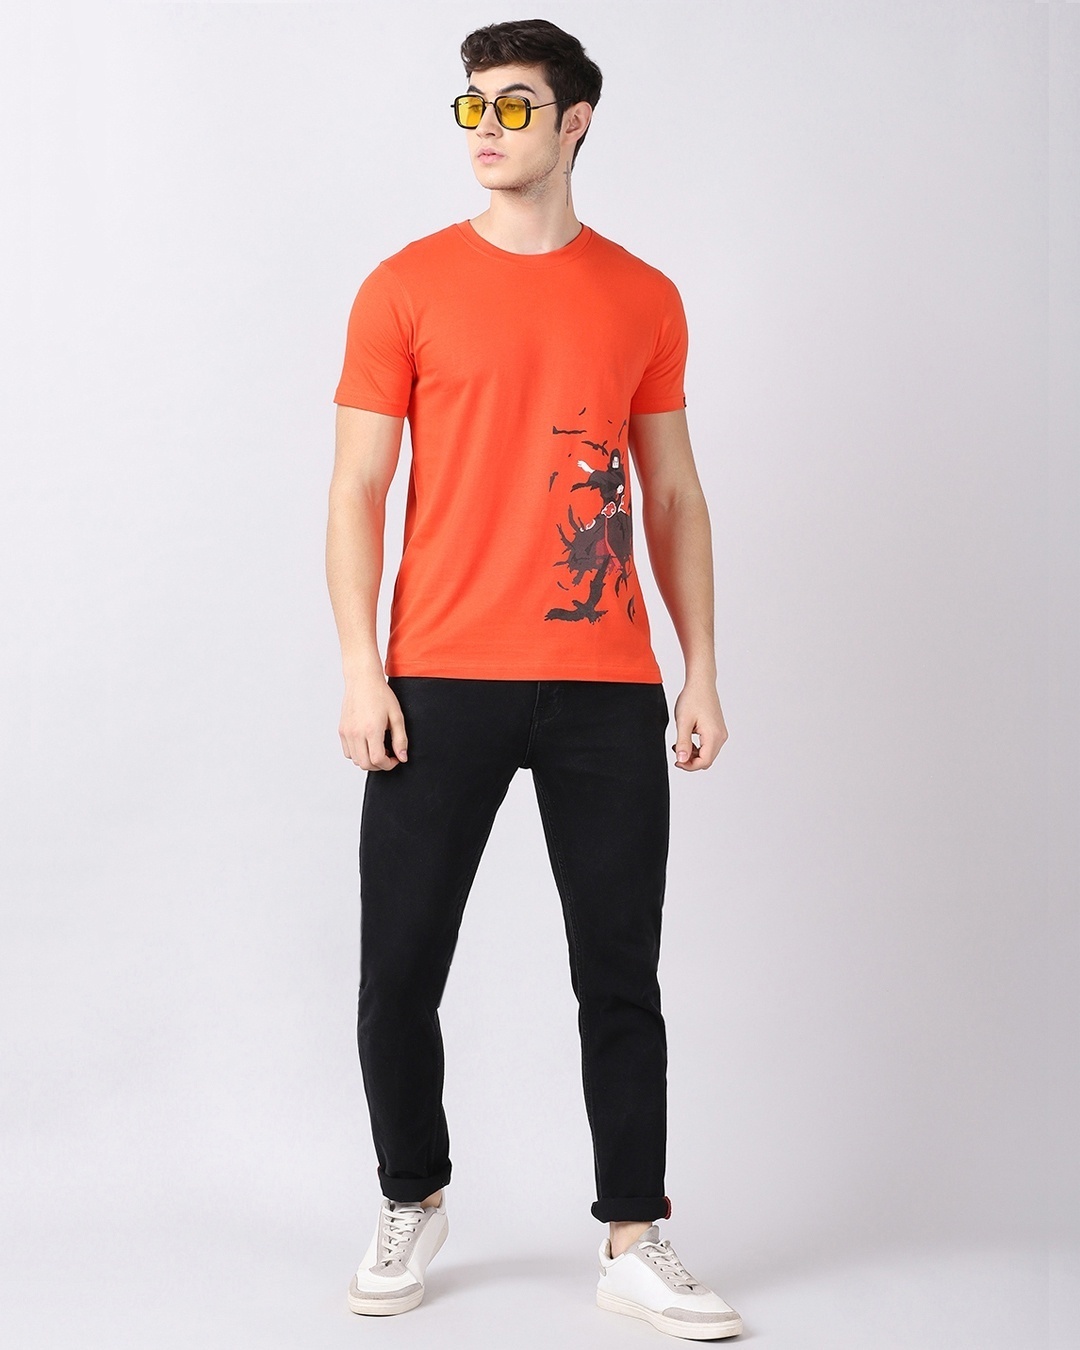 Shop Men's Orange Anime Itachi Uchiha Naruto Graphic Printed T-shirt